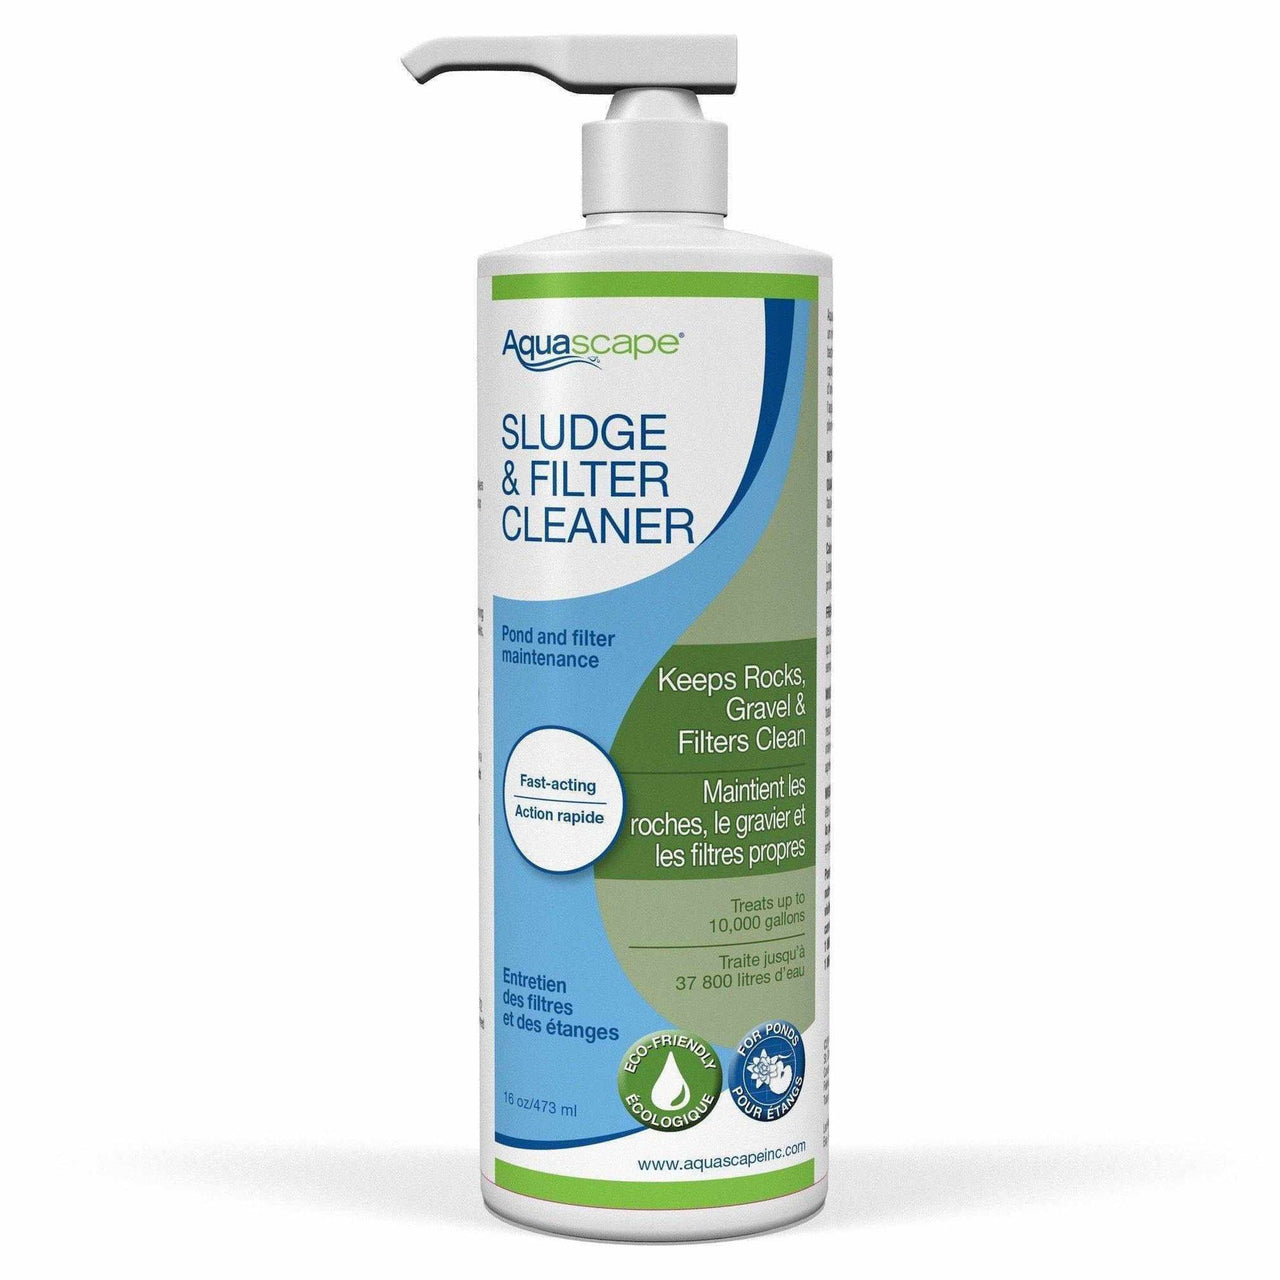 Aquascape Sludge & Filter Cleaner / Liquid - 473ml / 16oz